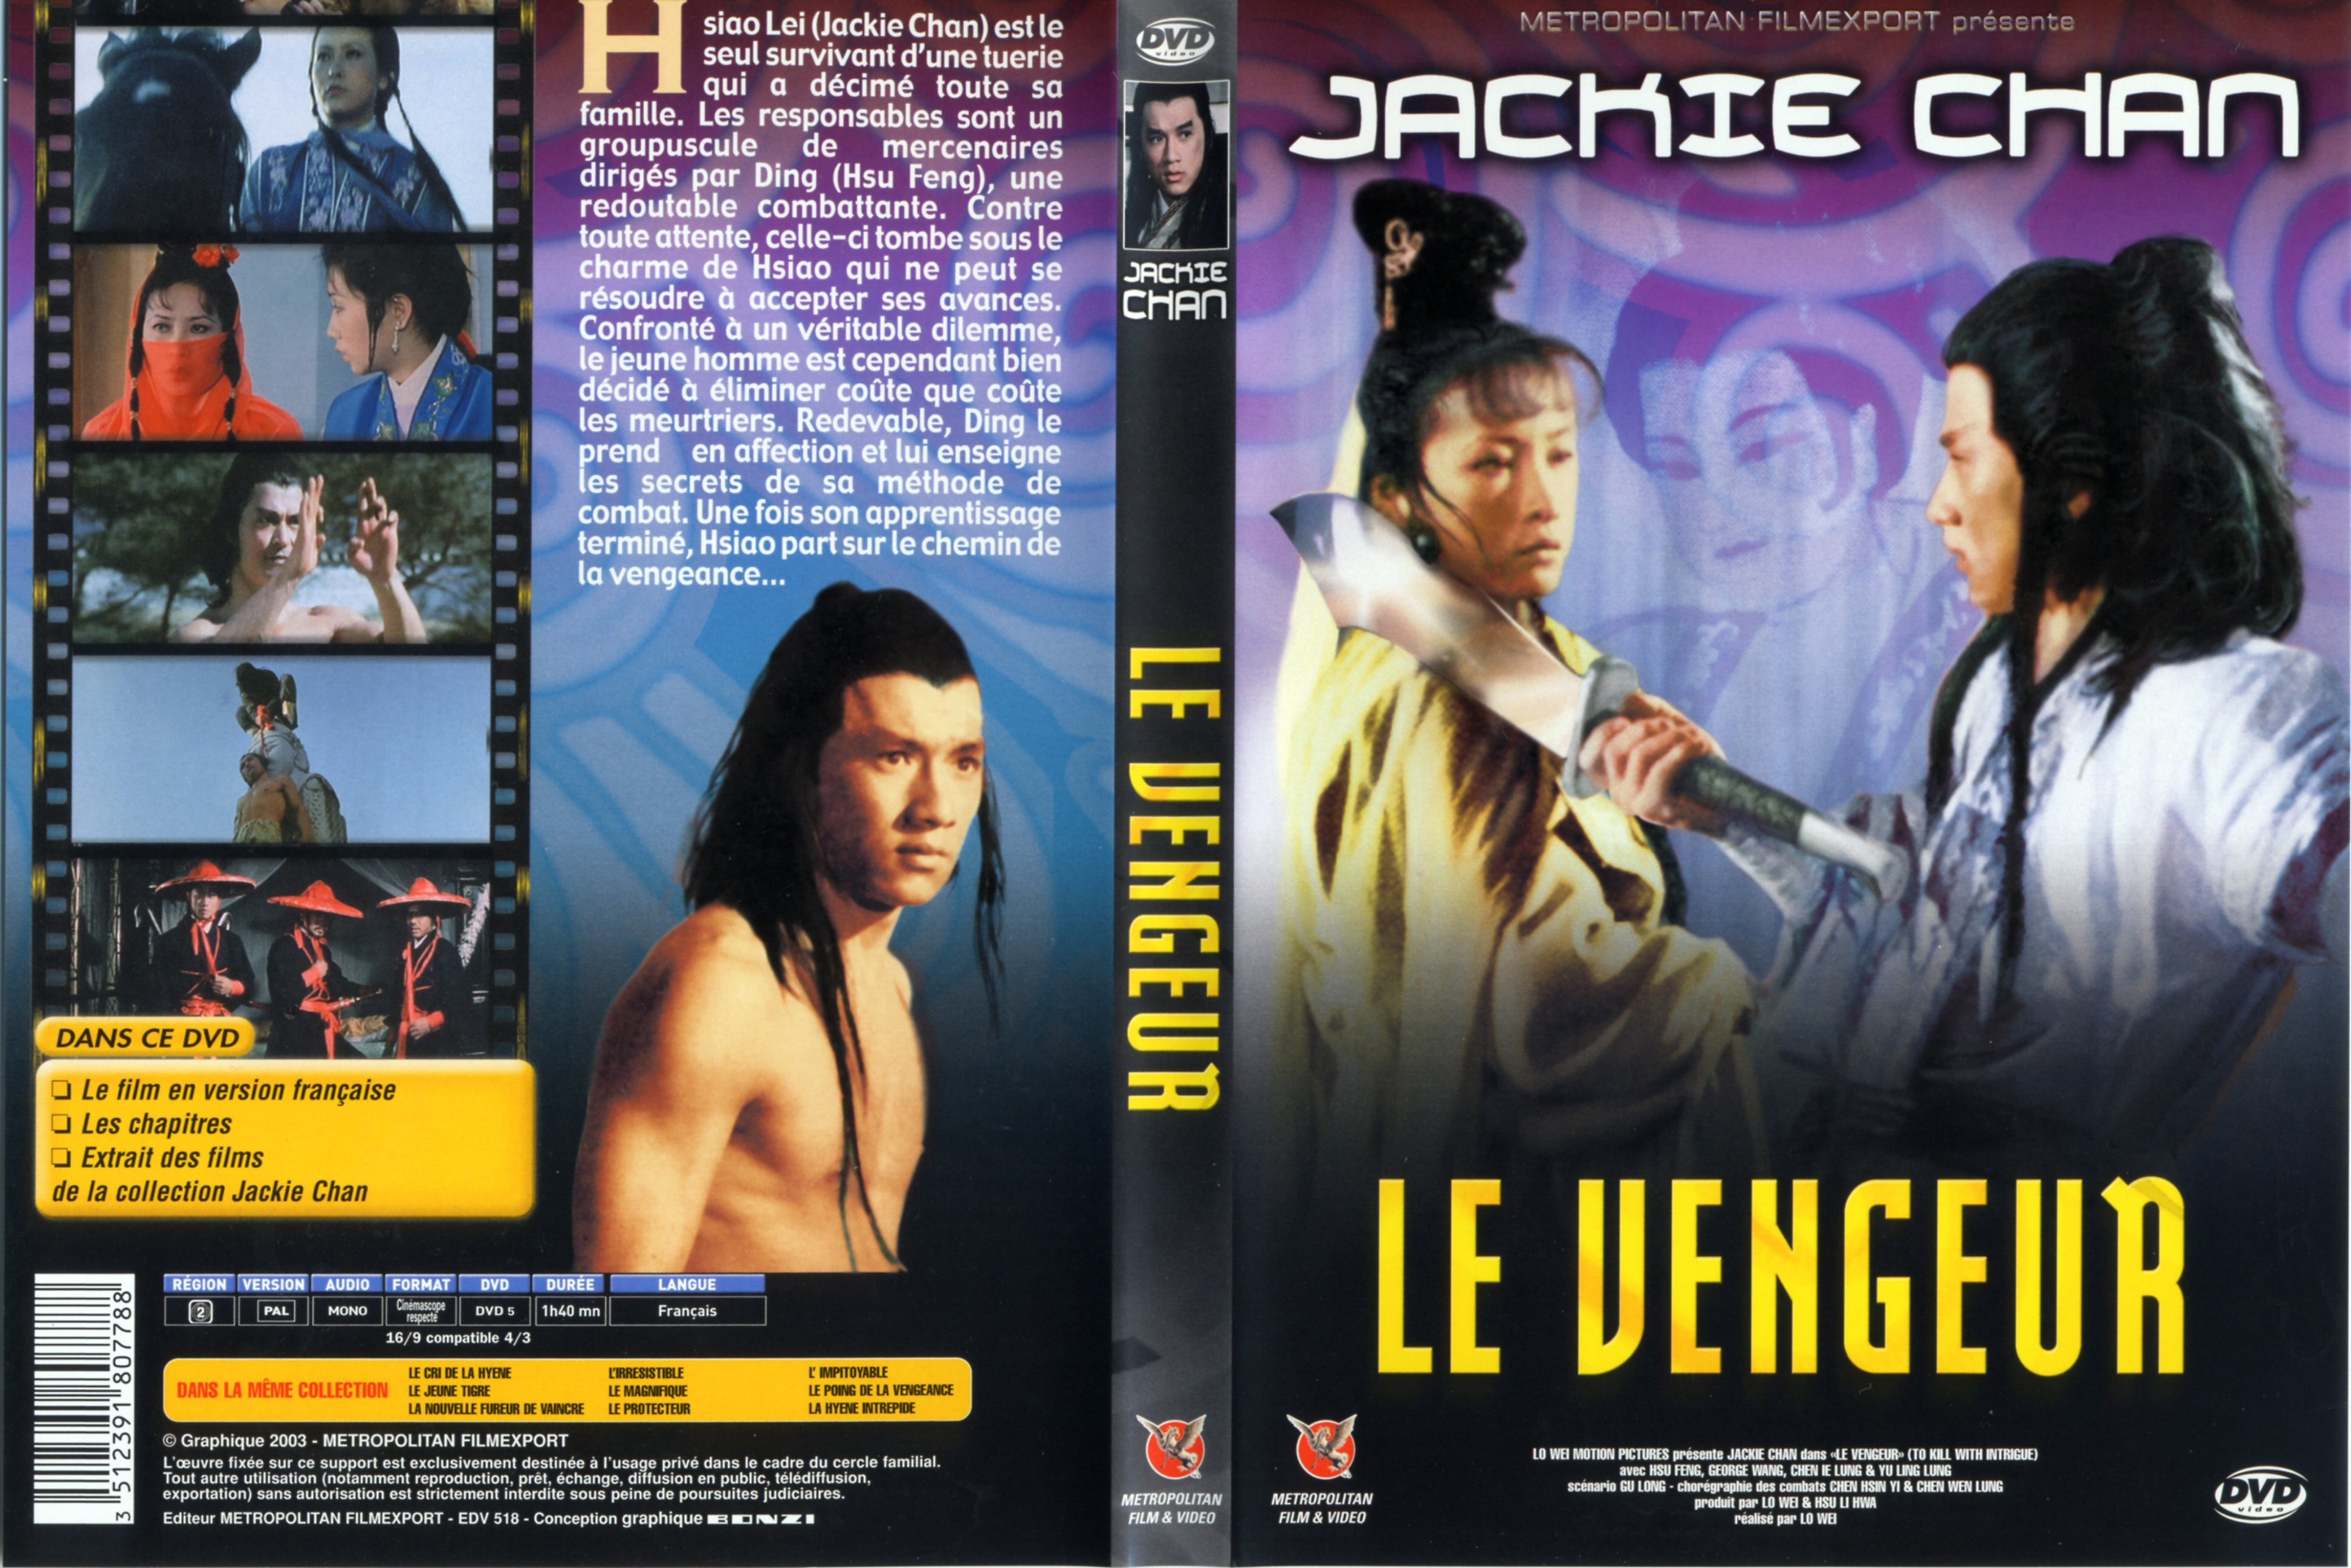 Jaquette DVD Le vengeur v3